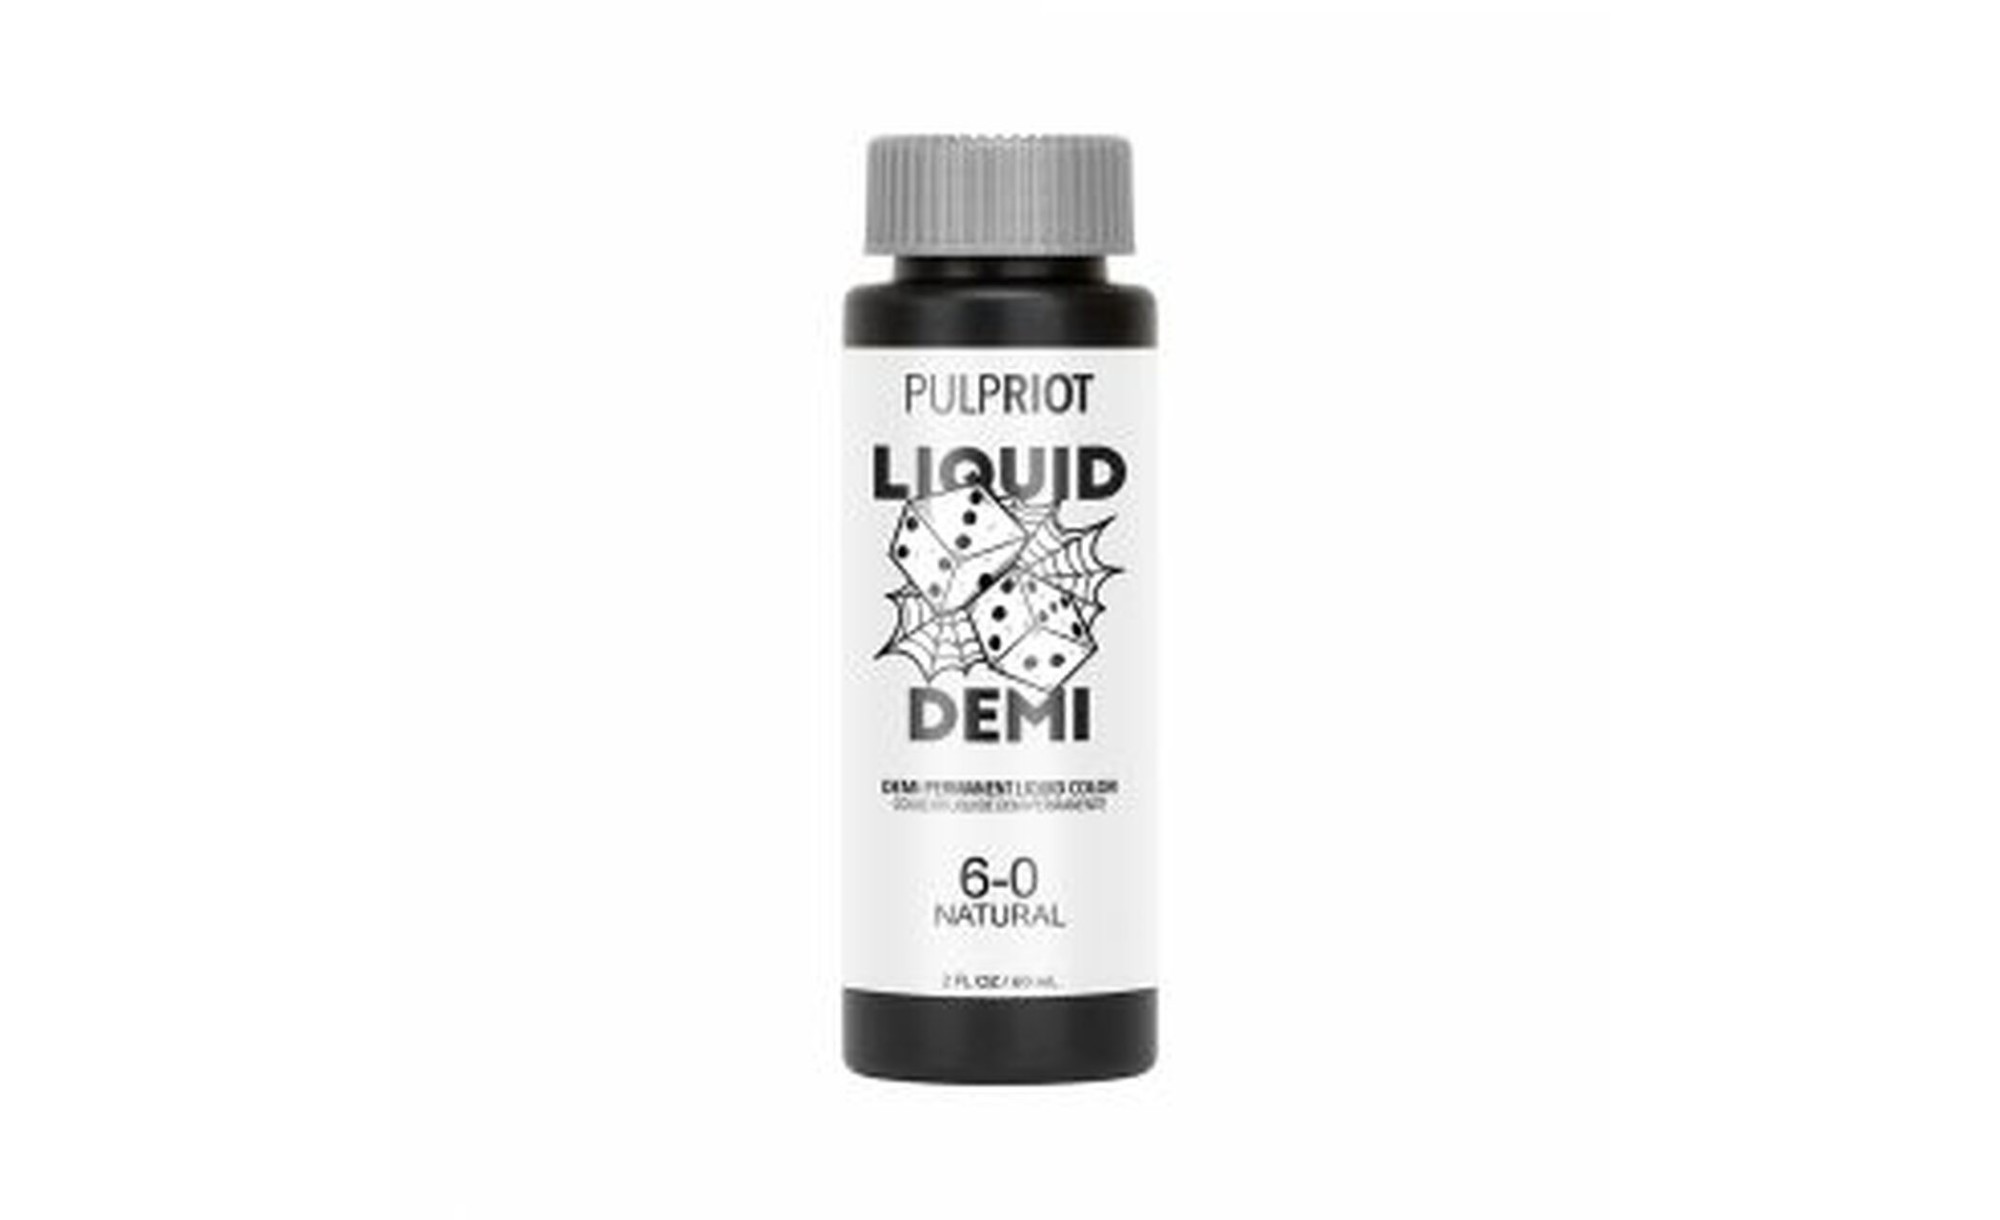 Pulp Riot Liquid Demi Natural 6.0